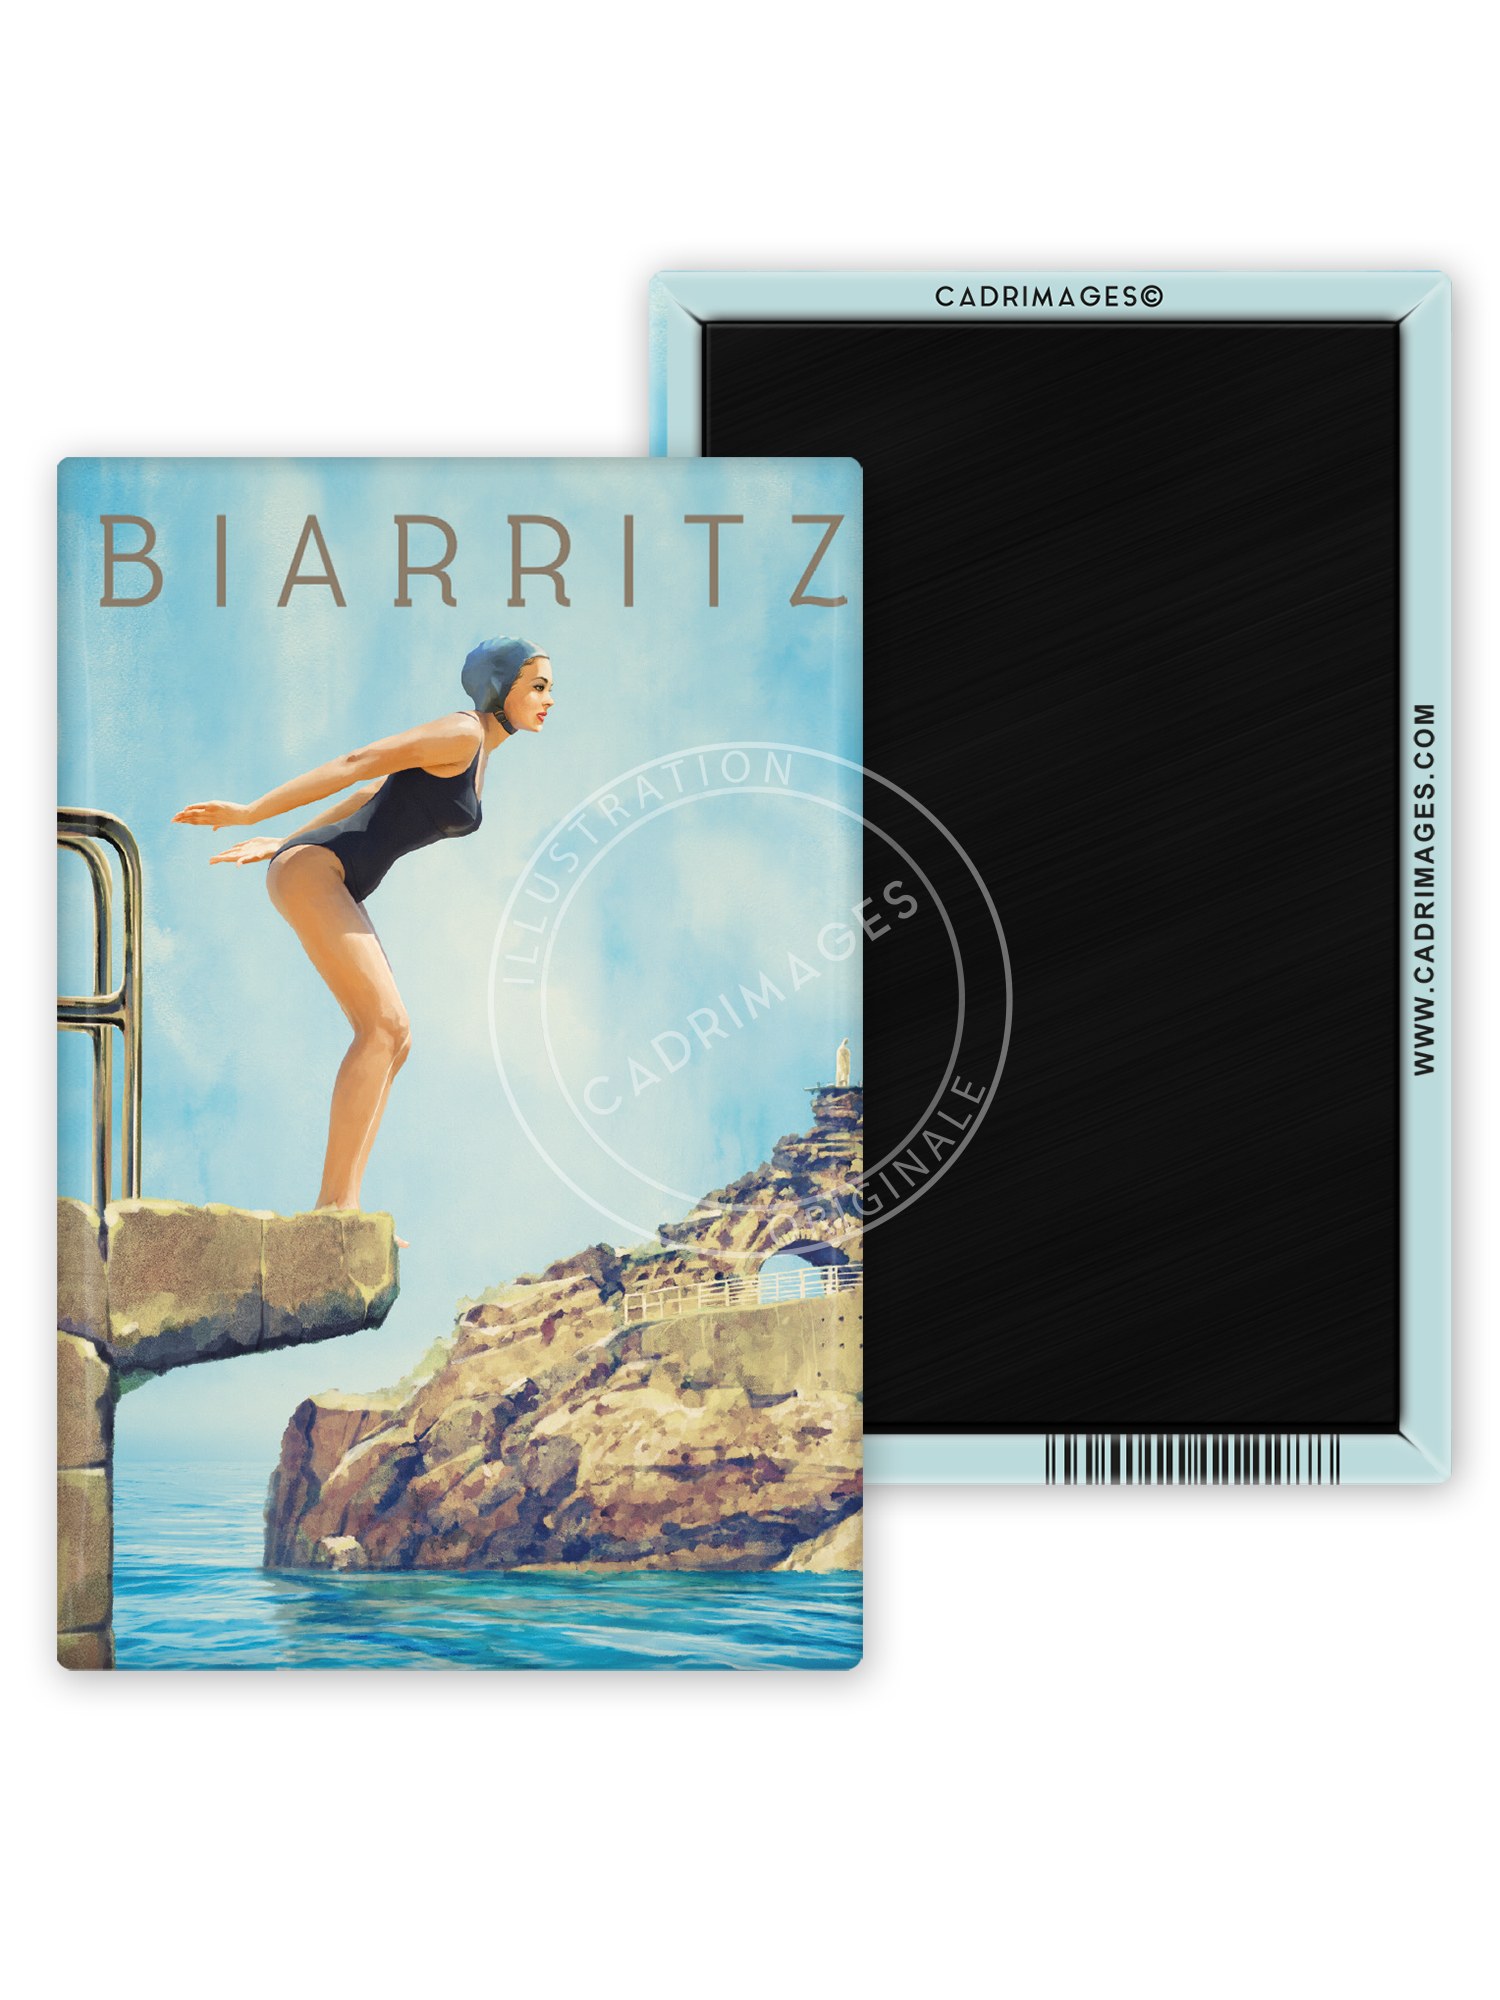 Magnet de Biarritz, baigneuse du port vieux